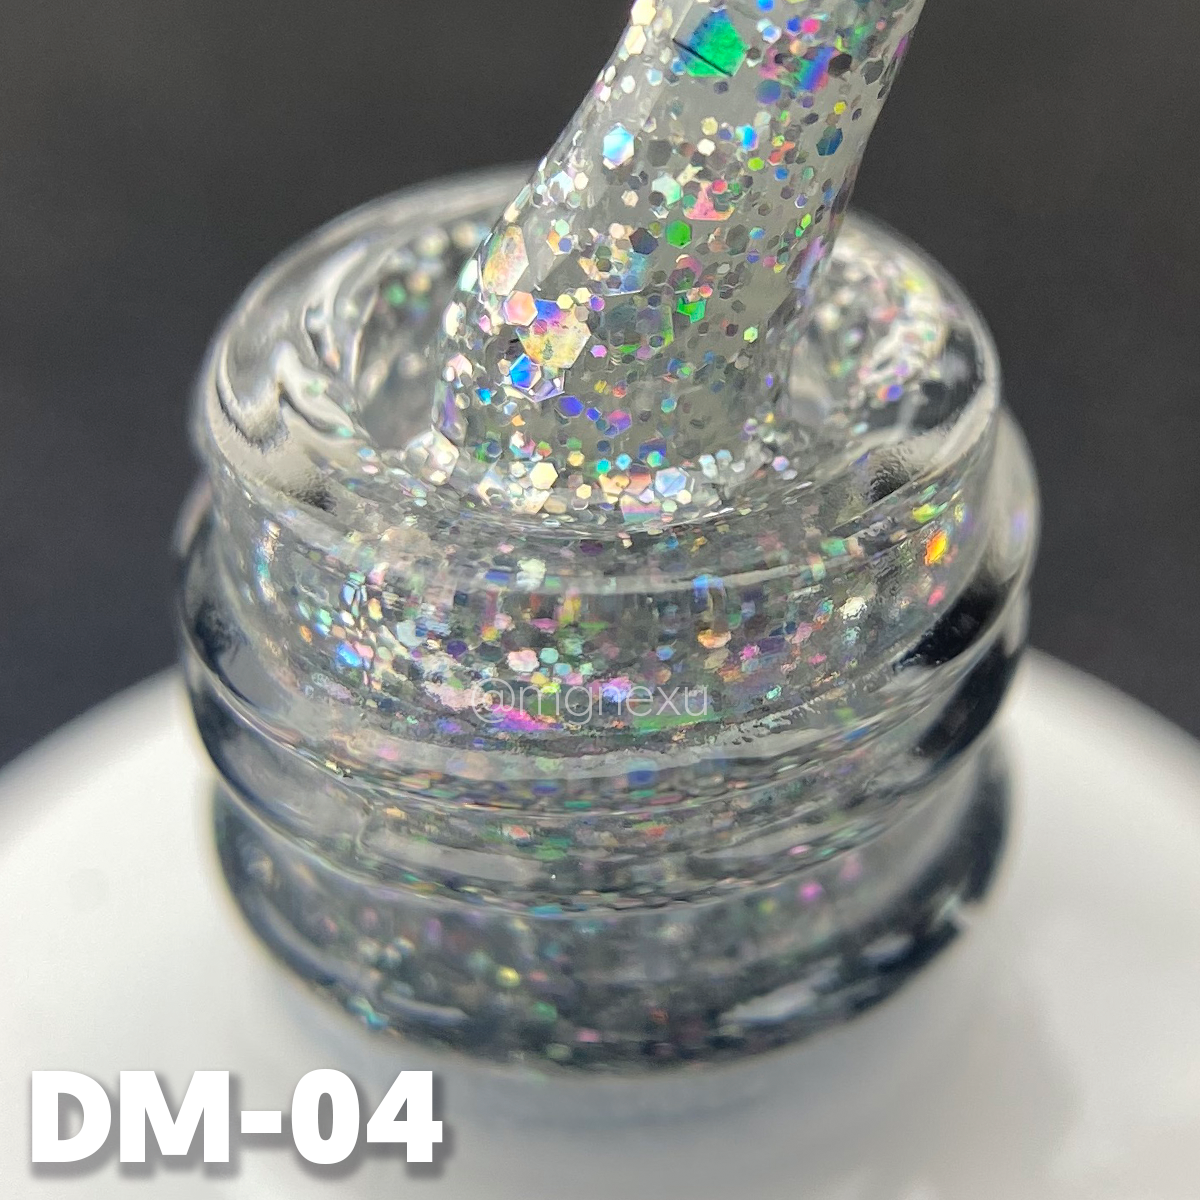 DM-04